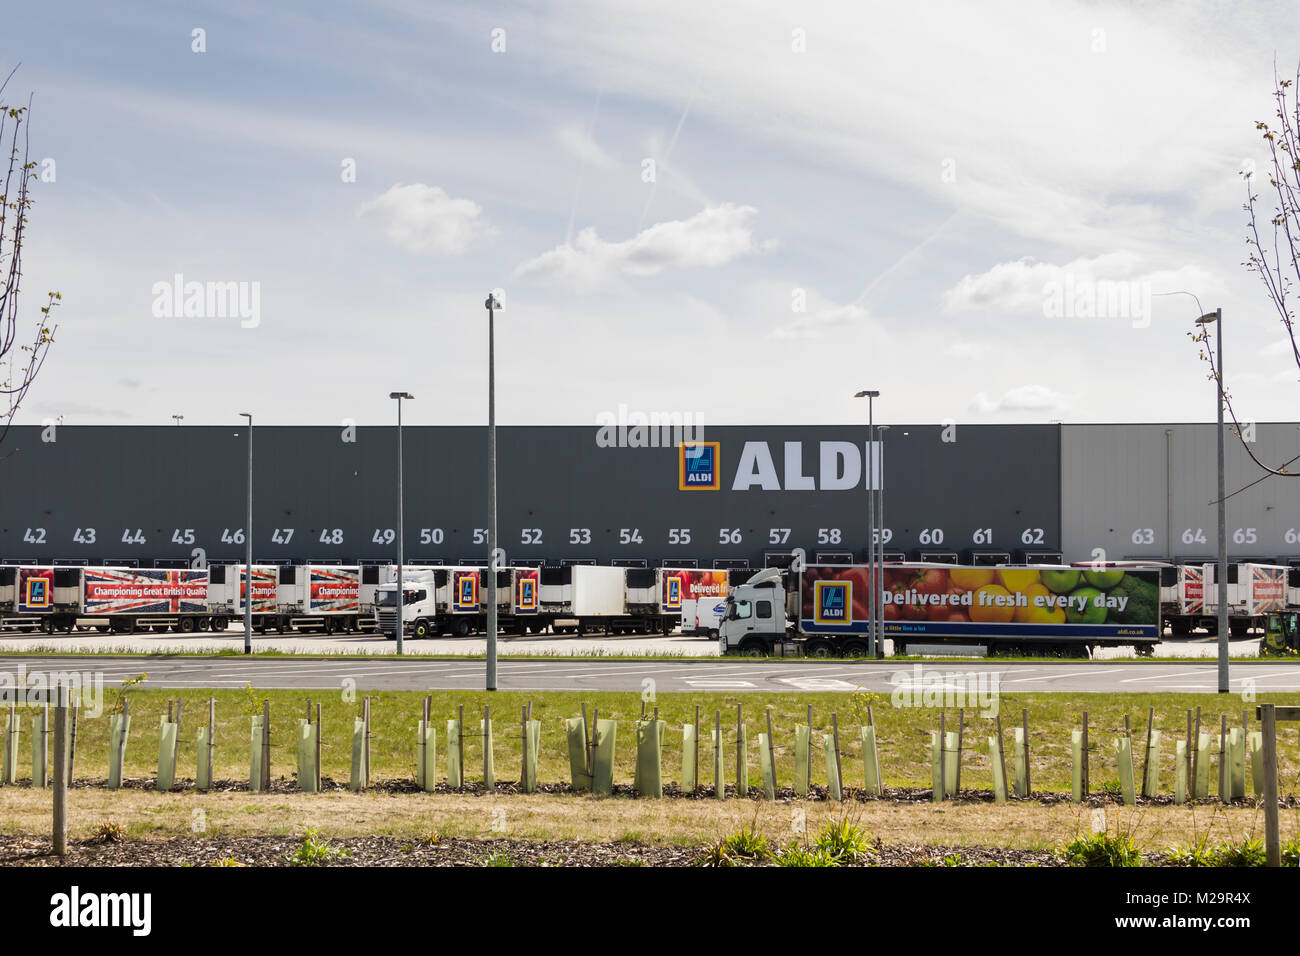 Los camiones articulados de la marca Aldi fuera el nuevo almacén de distribución y venta minorista de Aldi centro de formación en logística del norte, a lo largo de Hulton, Bolton. Foto de stock